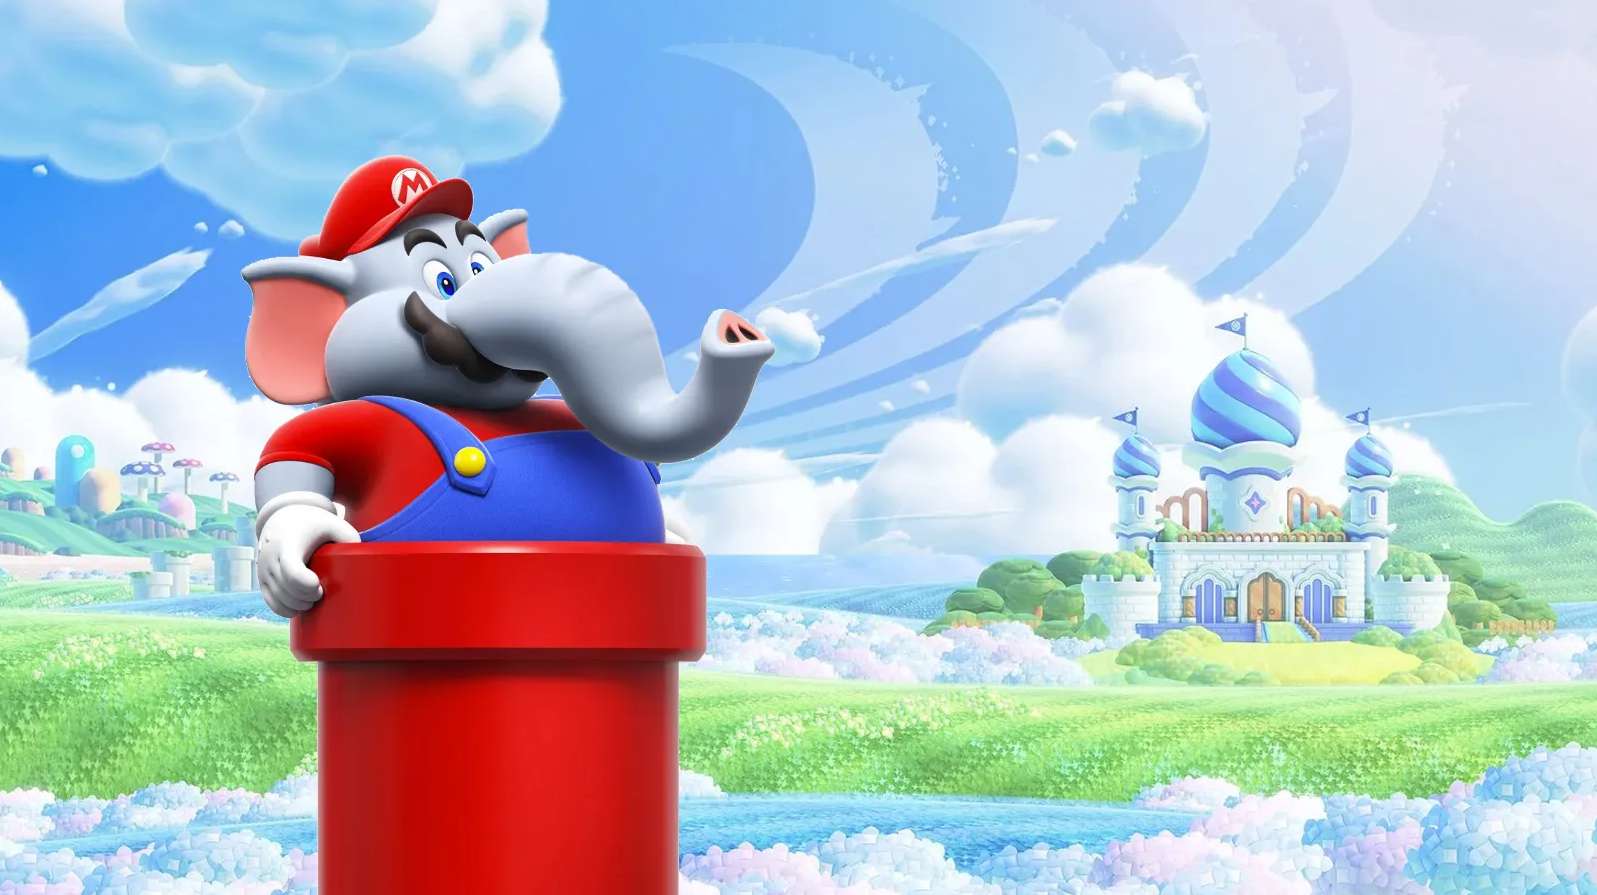 Recenzja gry Super Mario Bros. Wonder. To jedna z najlepszych gier na Switcha!